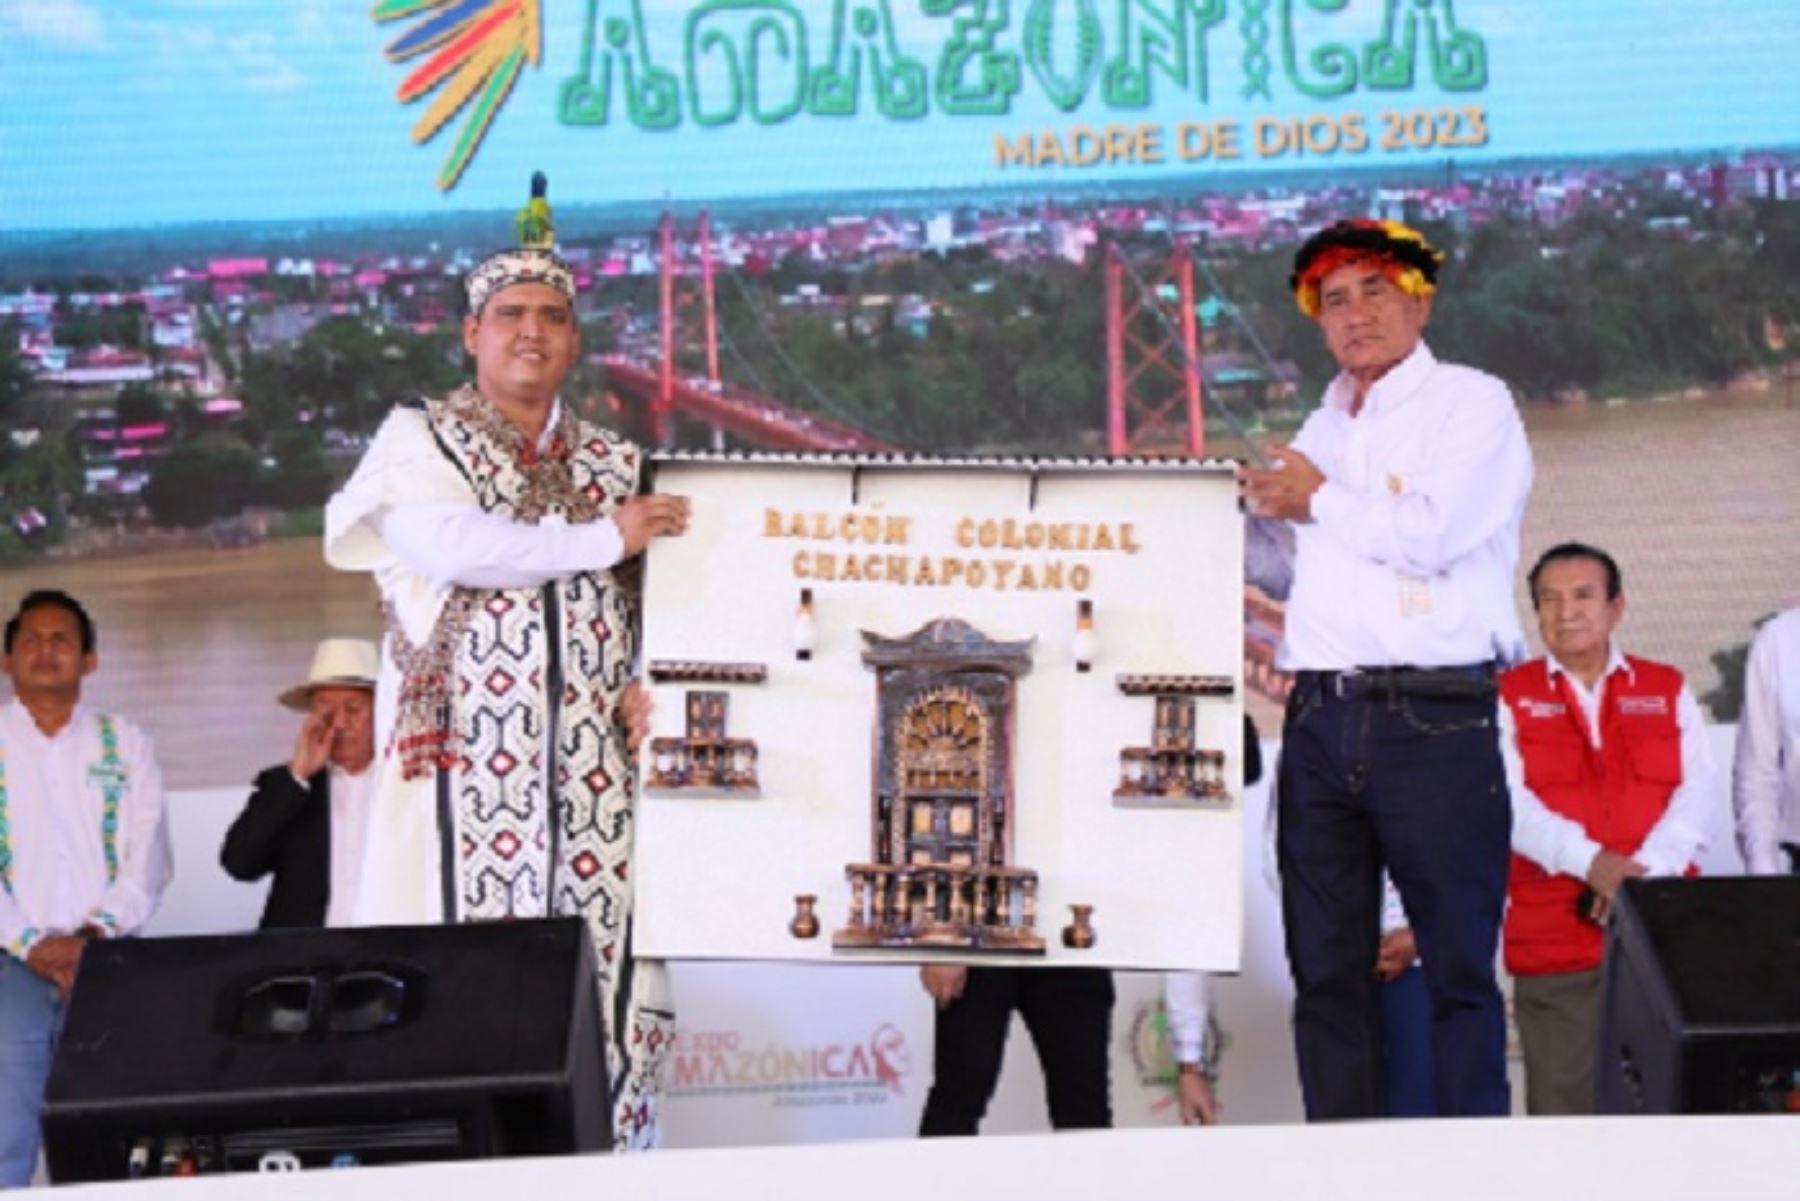 "Misión cumplida" expresó el gobernador regional de Amazonas, Oscar Altamarino Quispe, al resaltar la participación de las delegaciones de las regiones Ucayali, San Martín, Loreto, Madre de Dios y Huánuco, además de la anfitriona, que integran la Mancomunidad Amazónica.